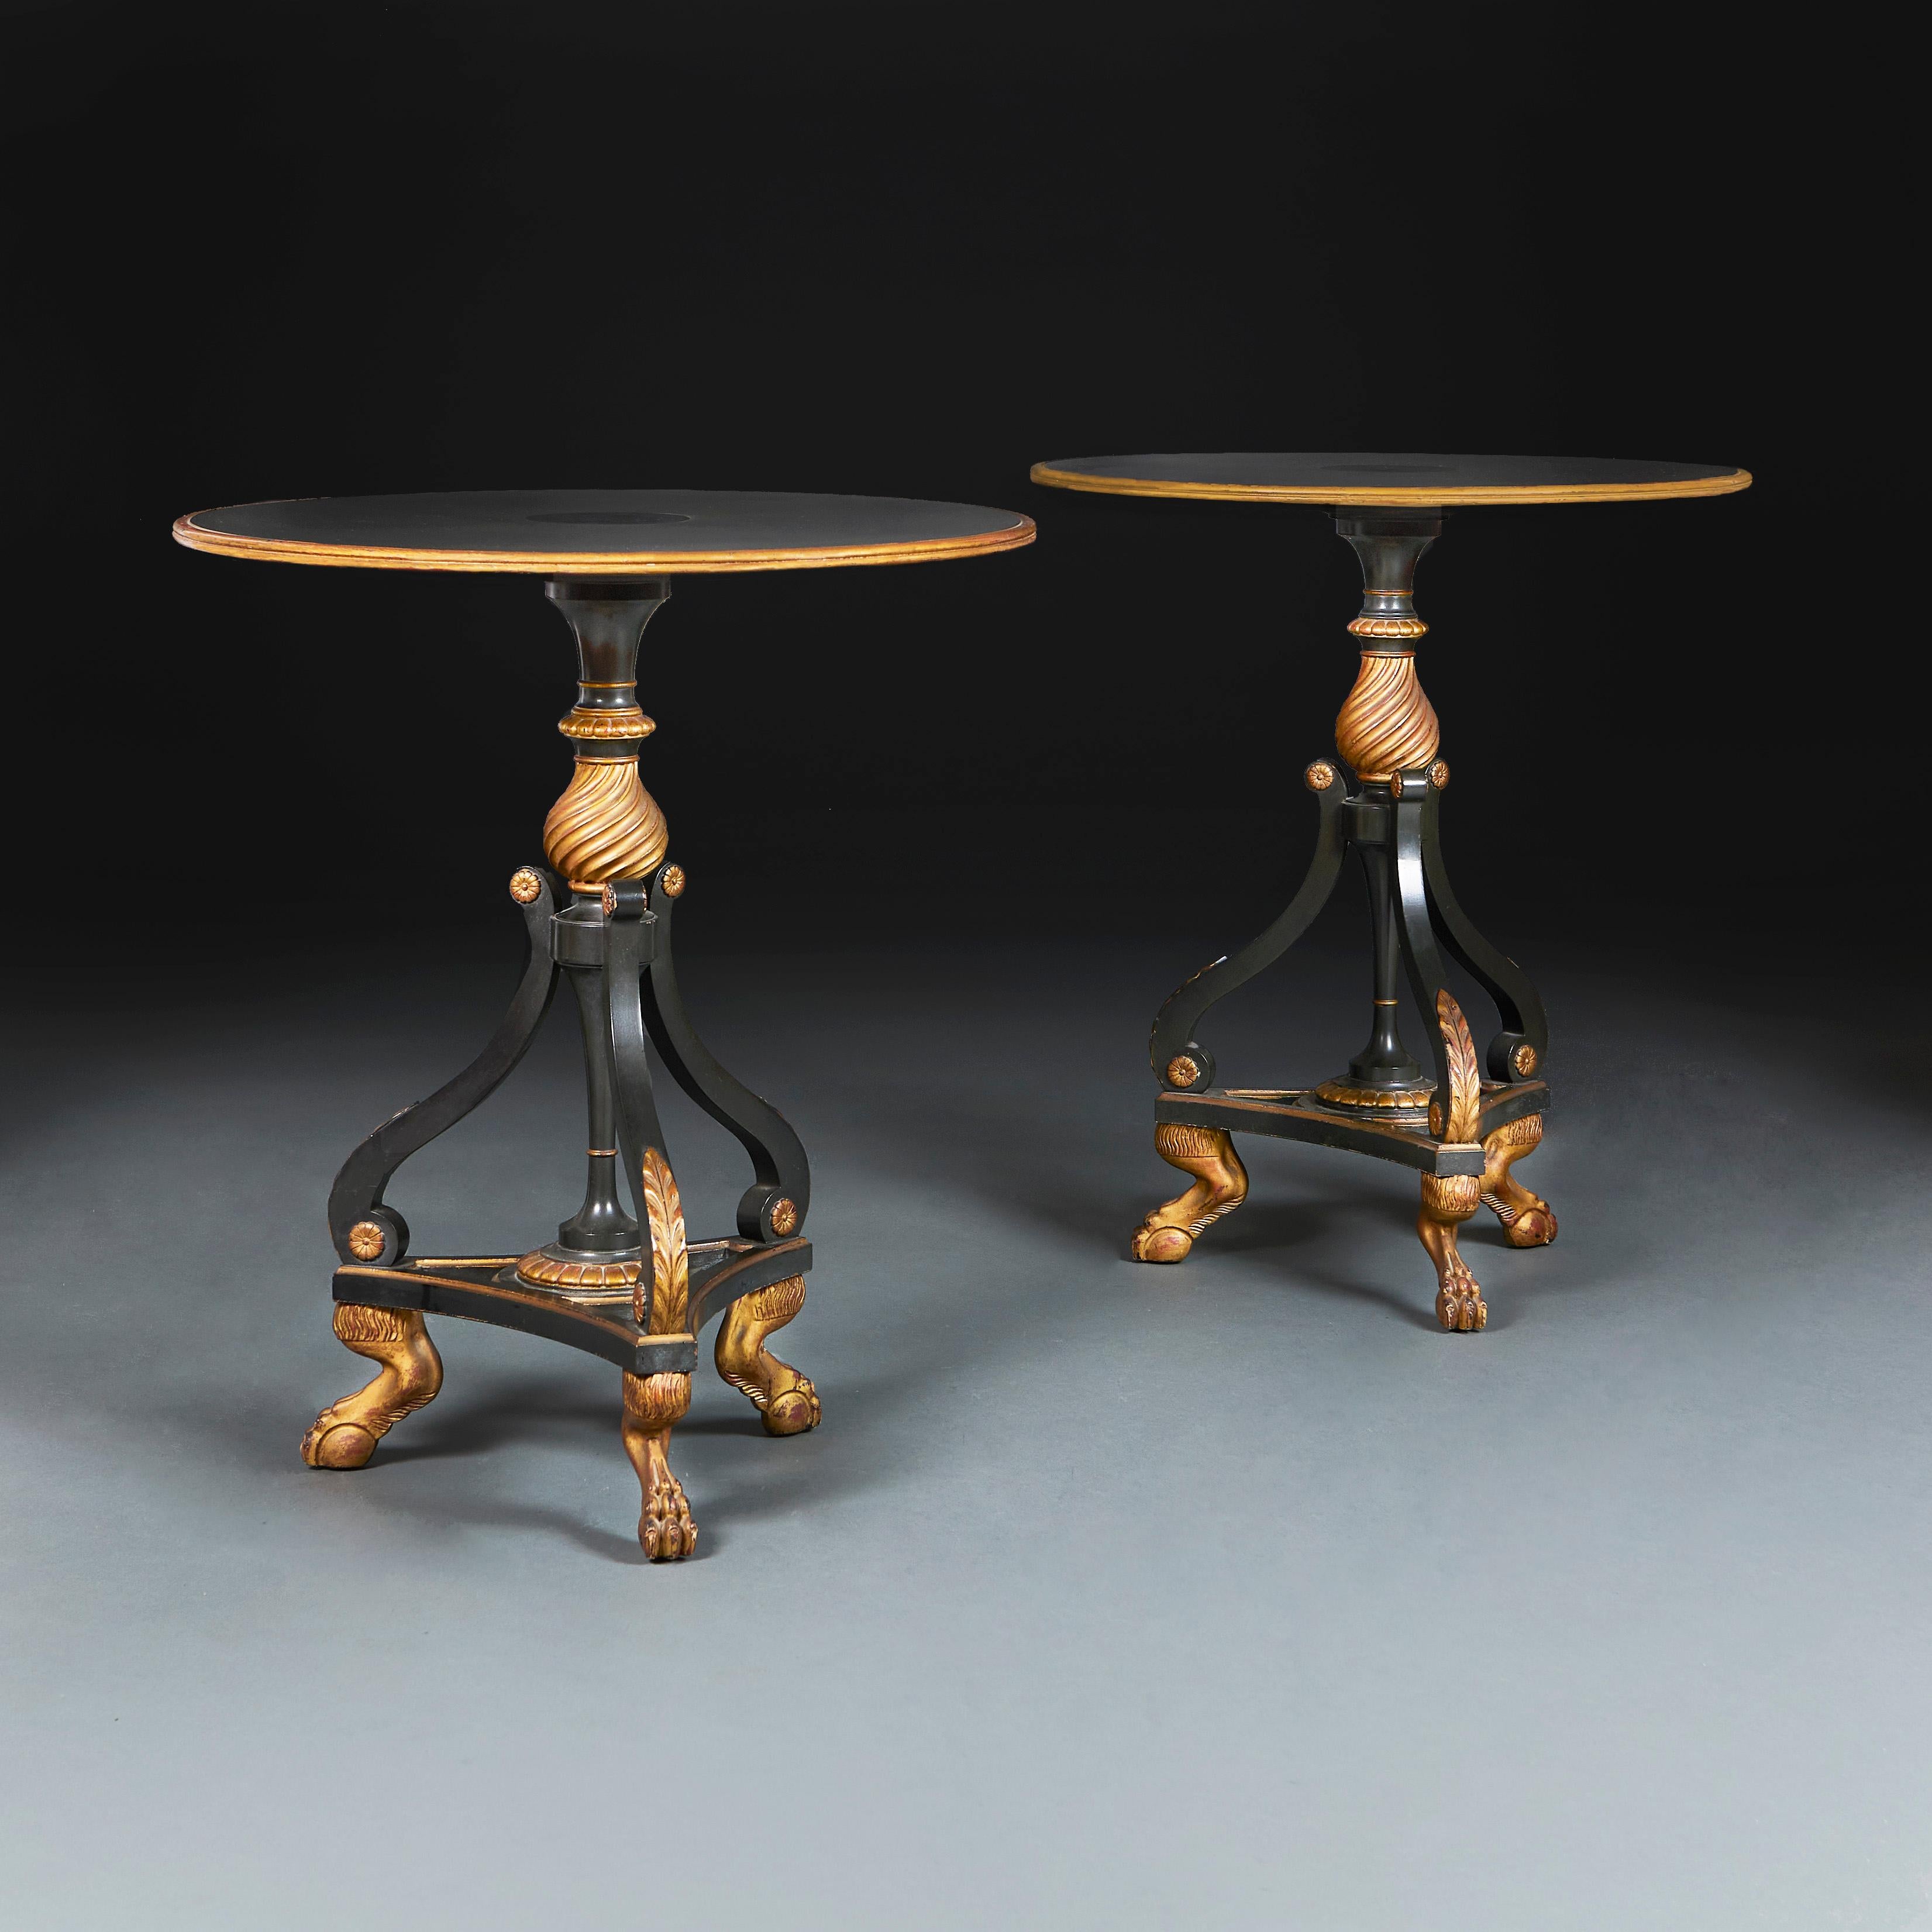 Angleterre, vers 1900

Une paire inhabituelle de tables d'appoint circulaires ébonisées et dorées dans le style Regency, avec des bases tripodes, toutes soutenues par des pieds en pattes de velours.

Hauteur 68.00cm
Diamètre 61,00 cm